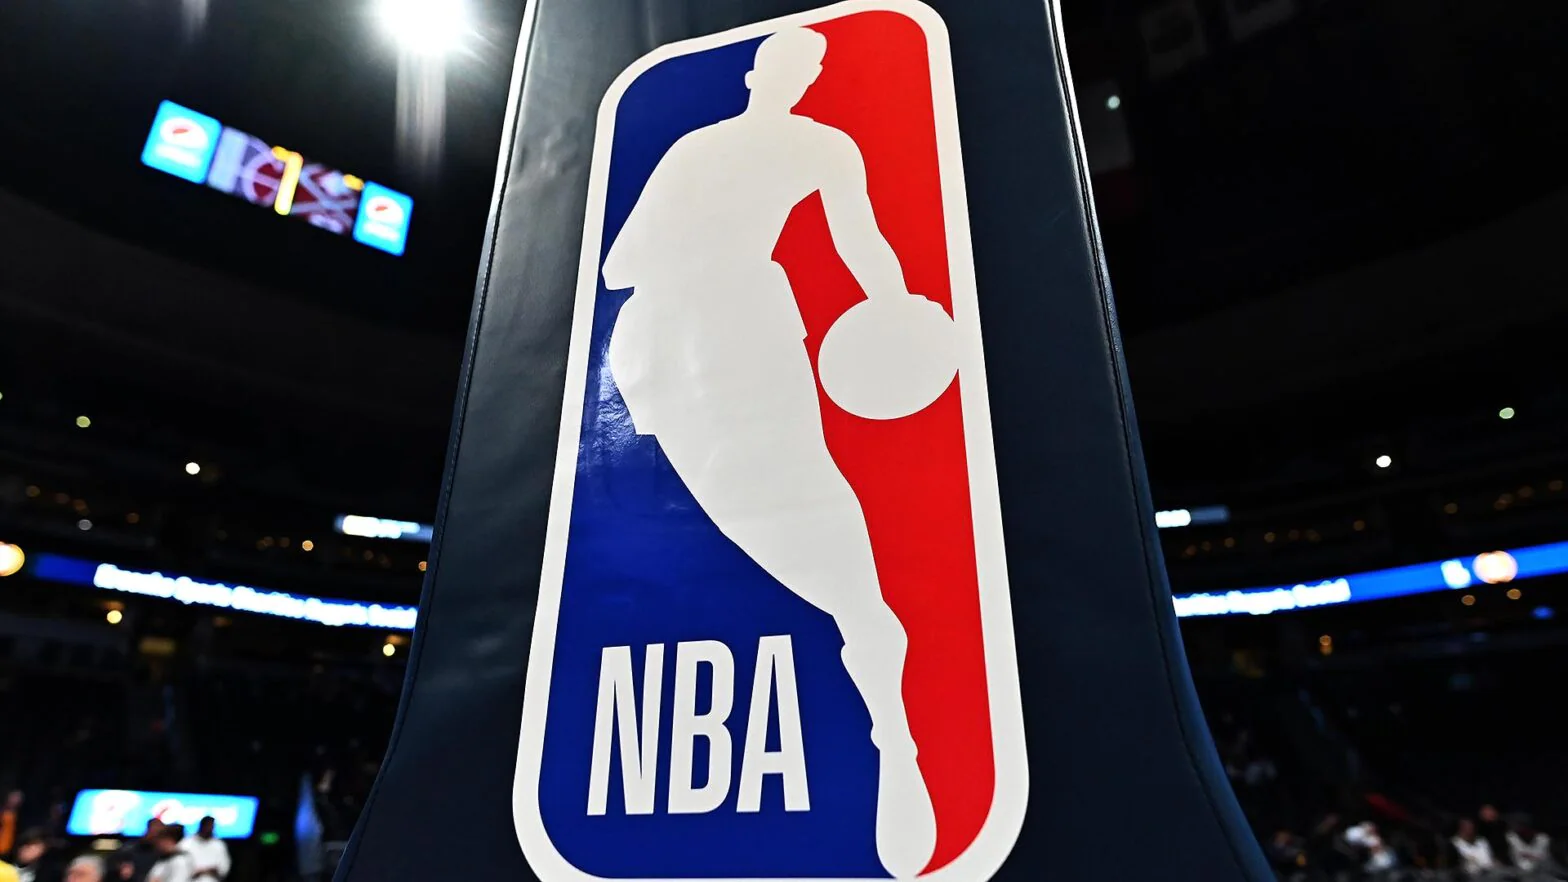 Temporada 2023/2024 da NBA começa nesta terça-feira - AcheiUSA